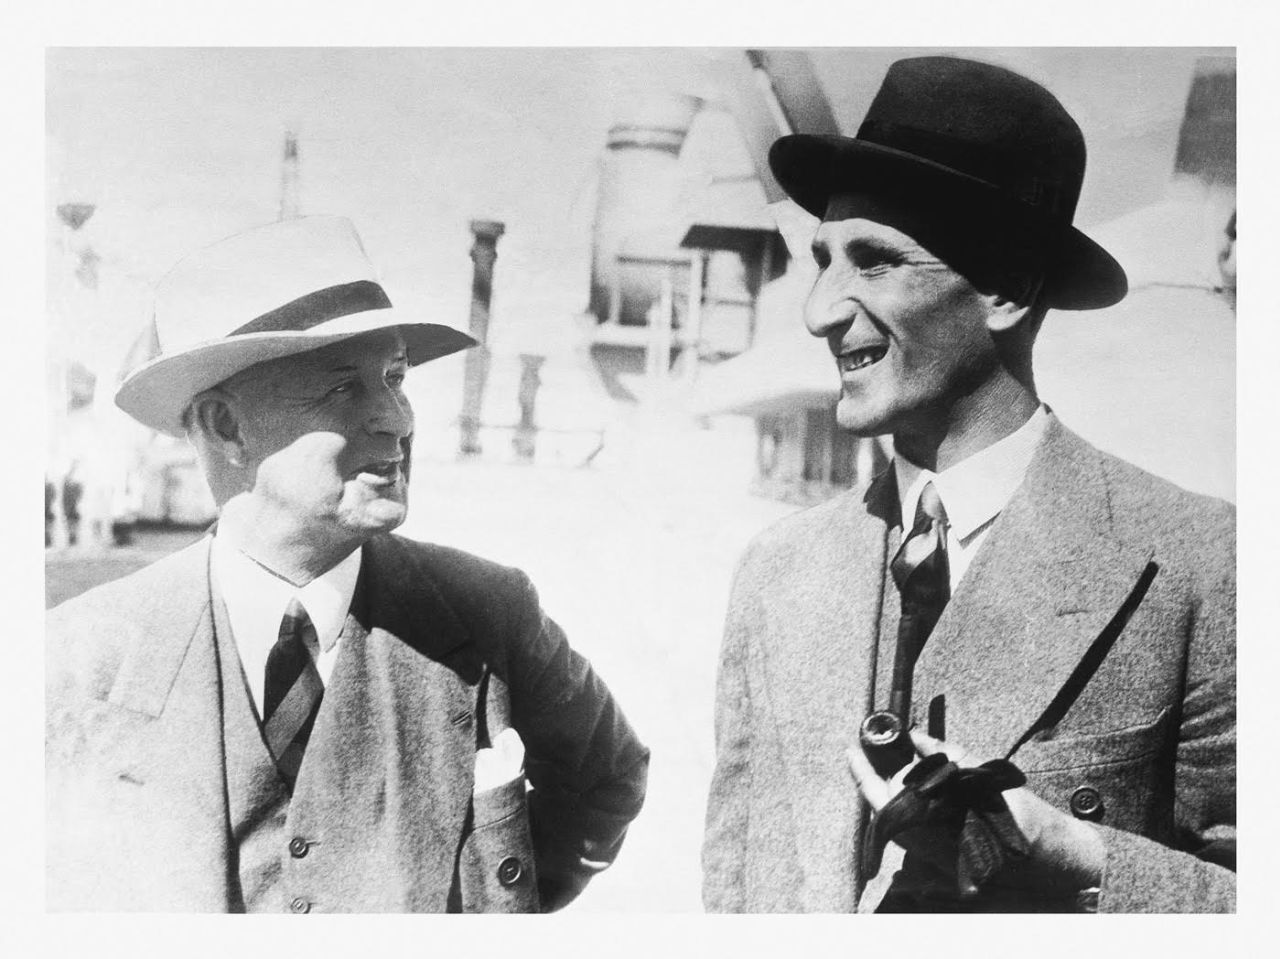 Pelham Warner and Douglas Jardine on arriving in Australia for the Bodyline series, November 15, 1932